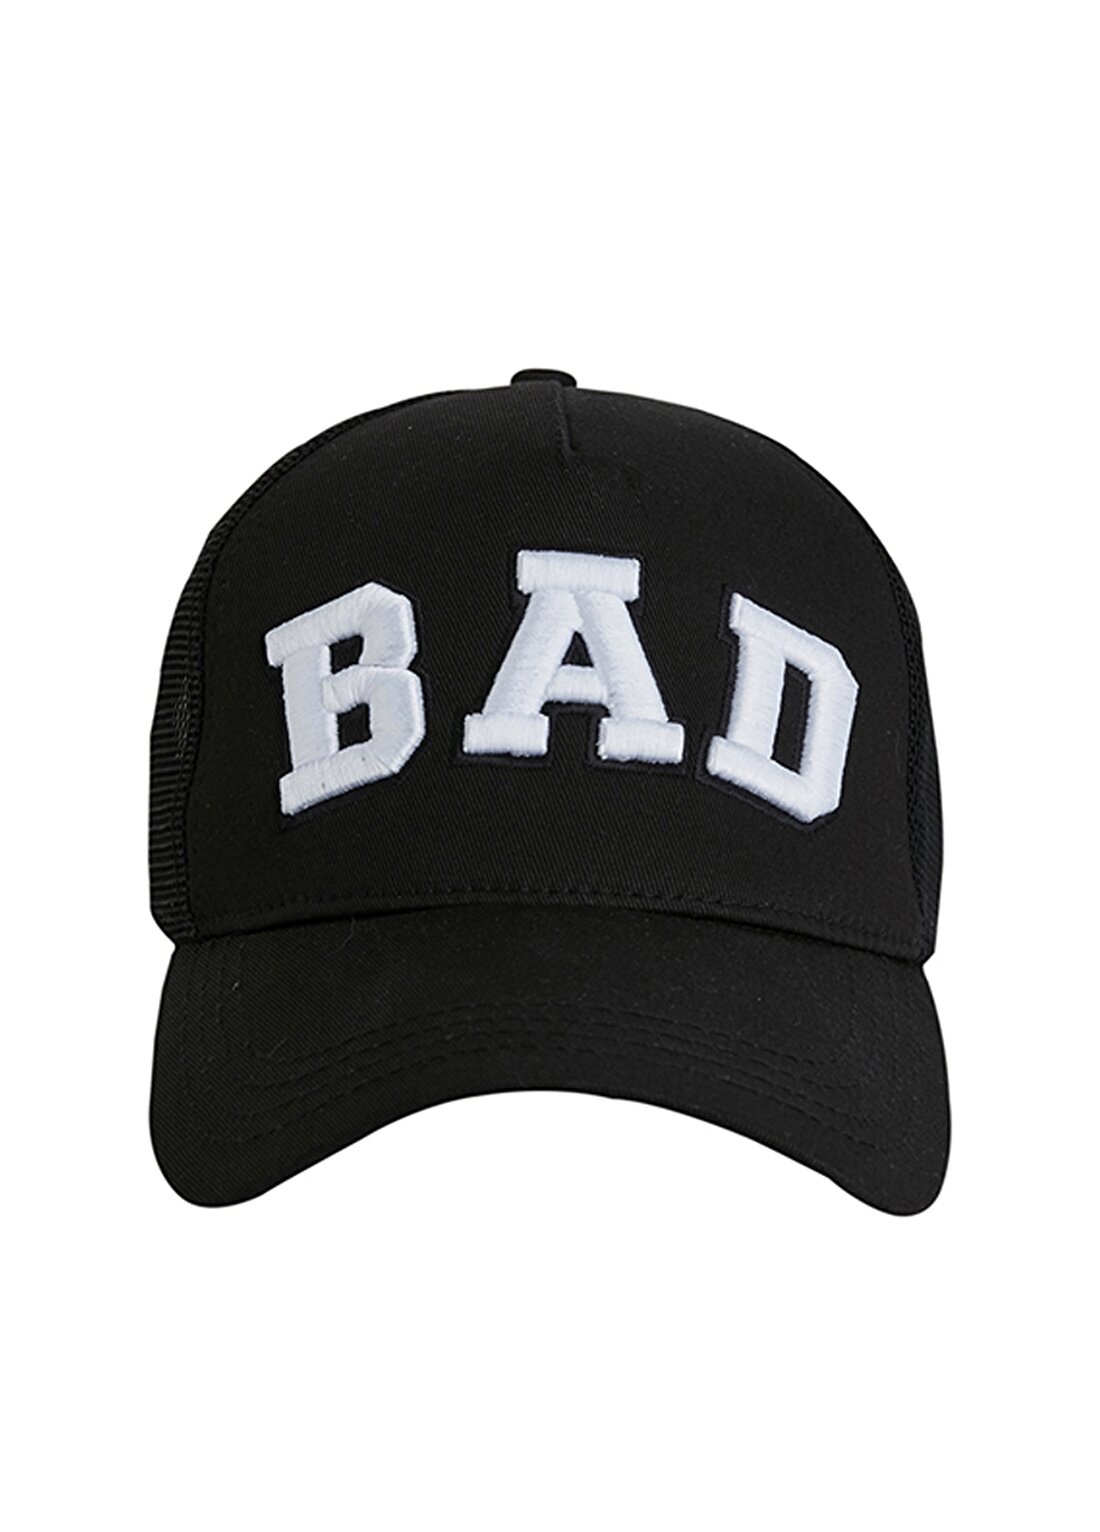 Bad Bear Siyah Erkek Şapka